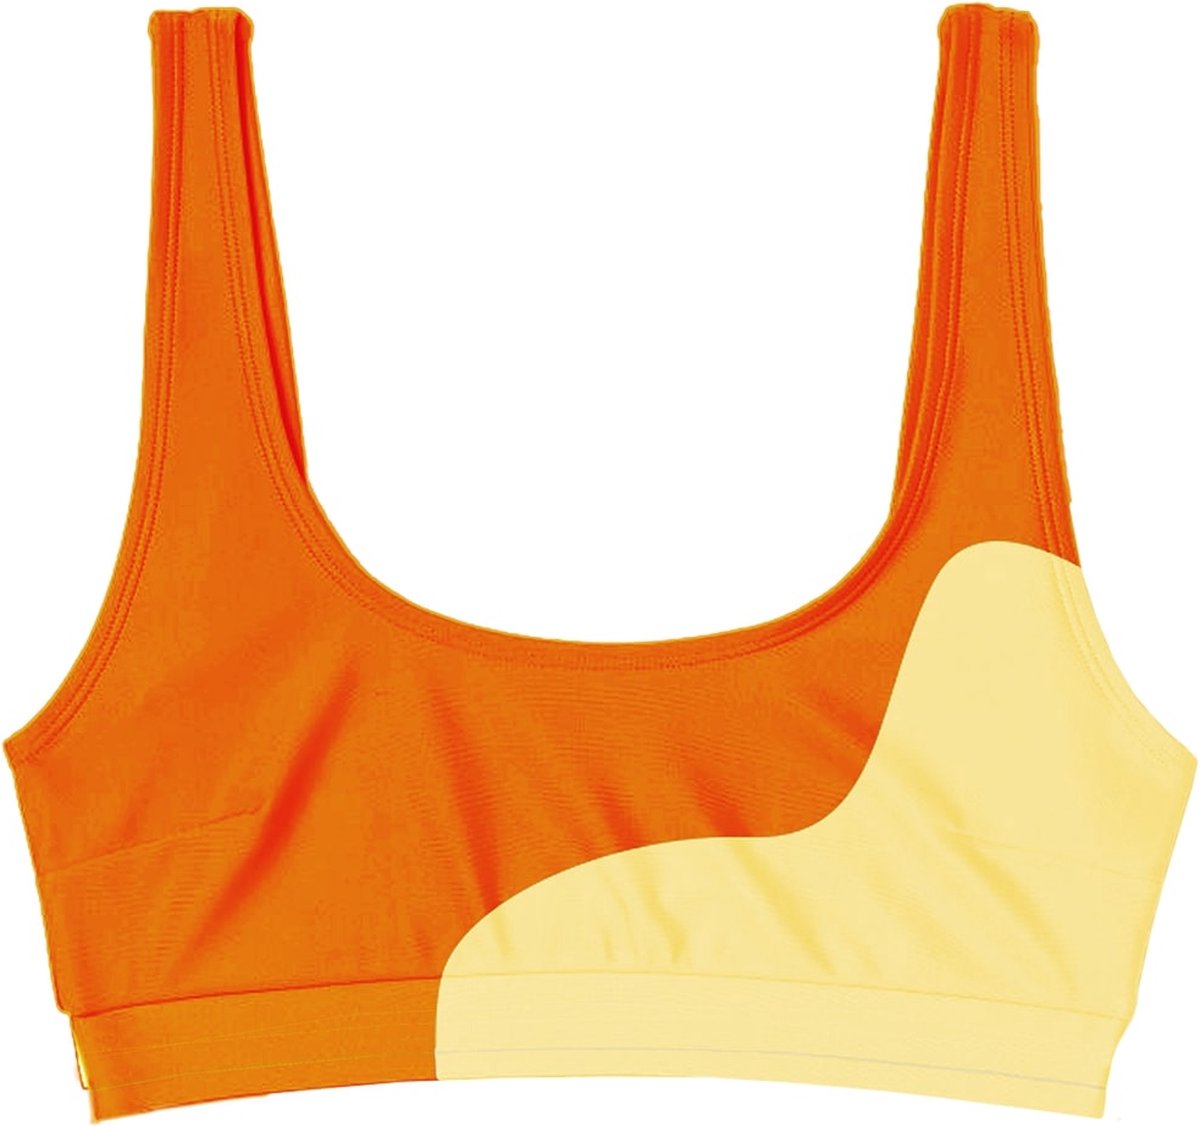 Sea'sons Official - Kleurveranderend - Brassiere Bikini Top - Oranje-Rood - S